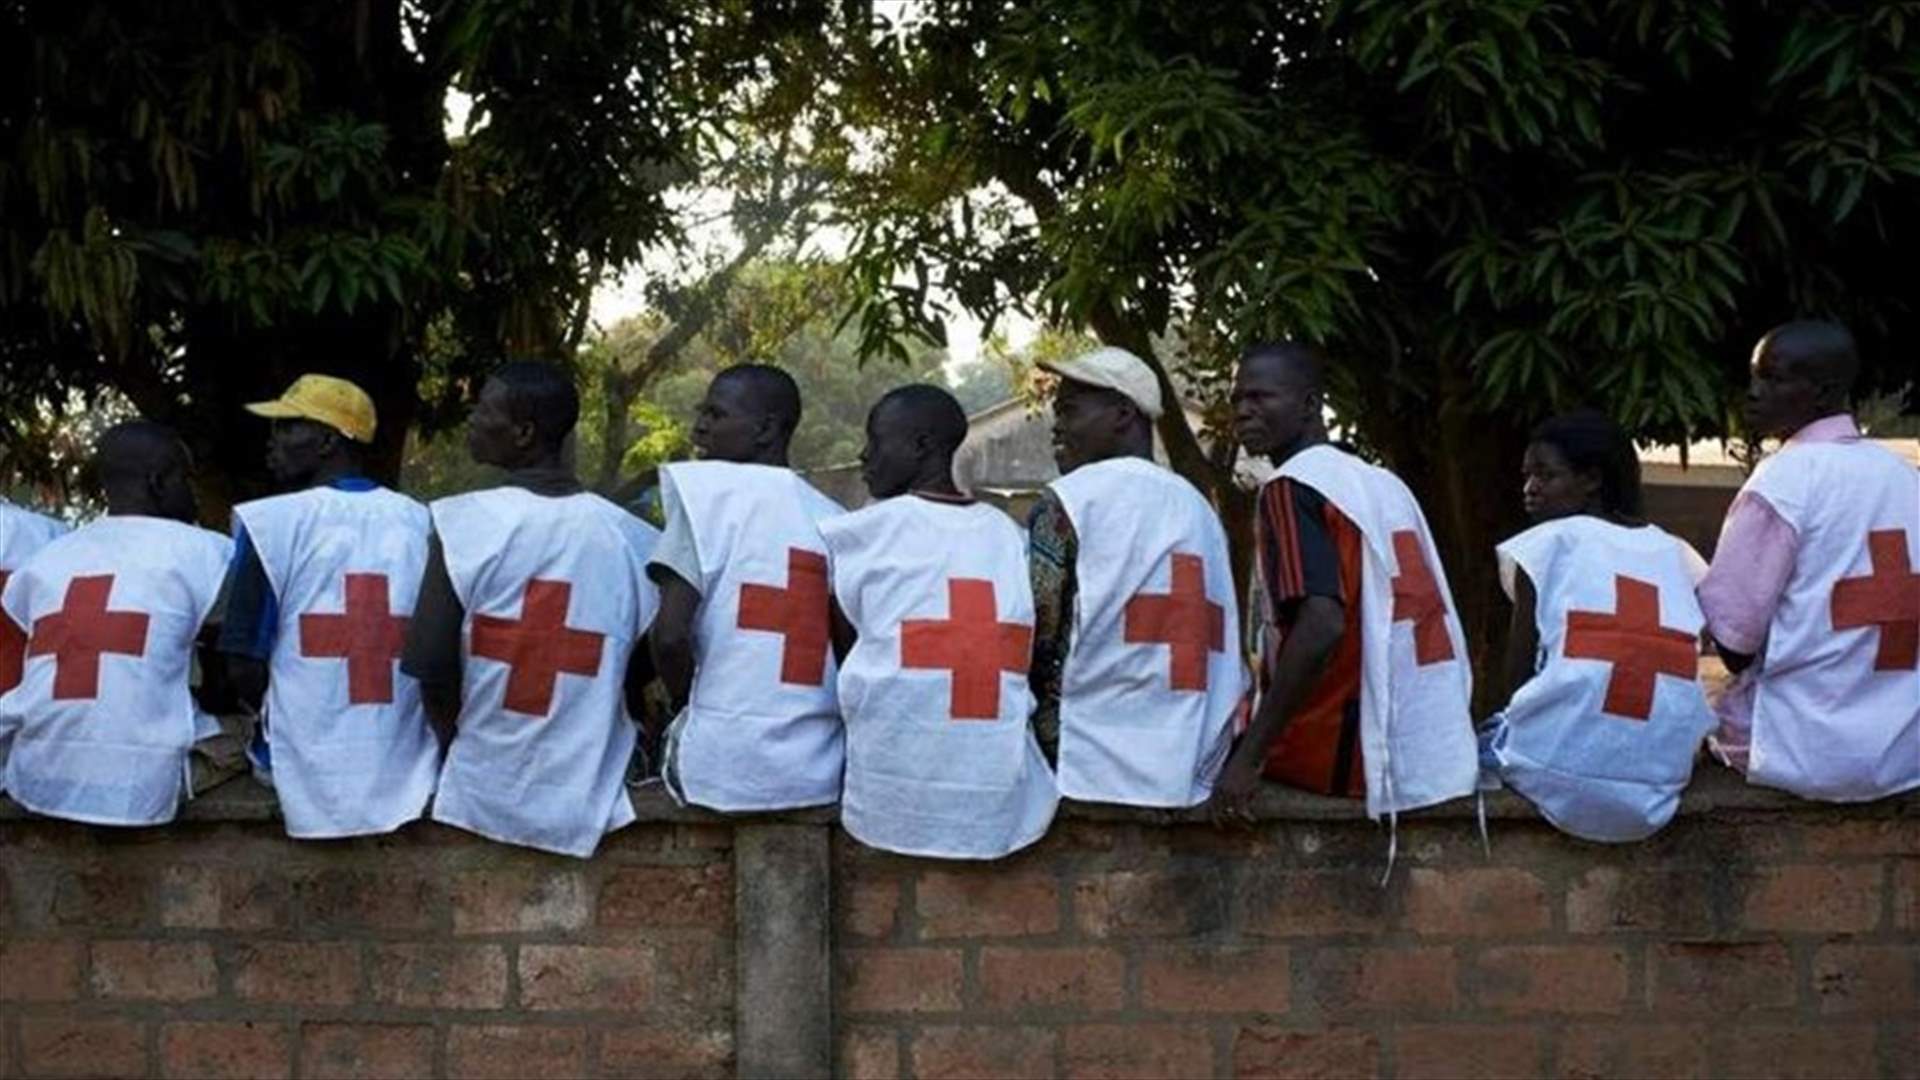 مع انتشار المجاعة في العالم... الصليب الأحمر يخشى معاناة هائلة في عام 2023